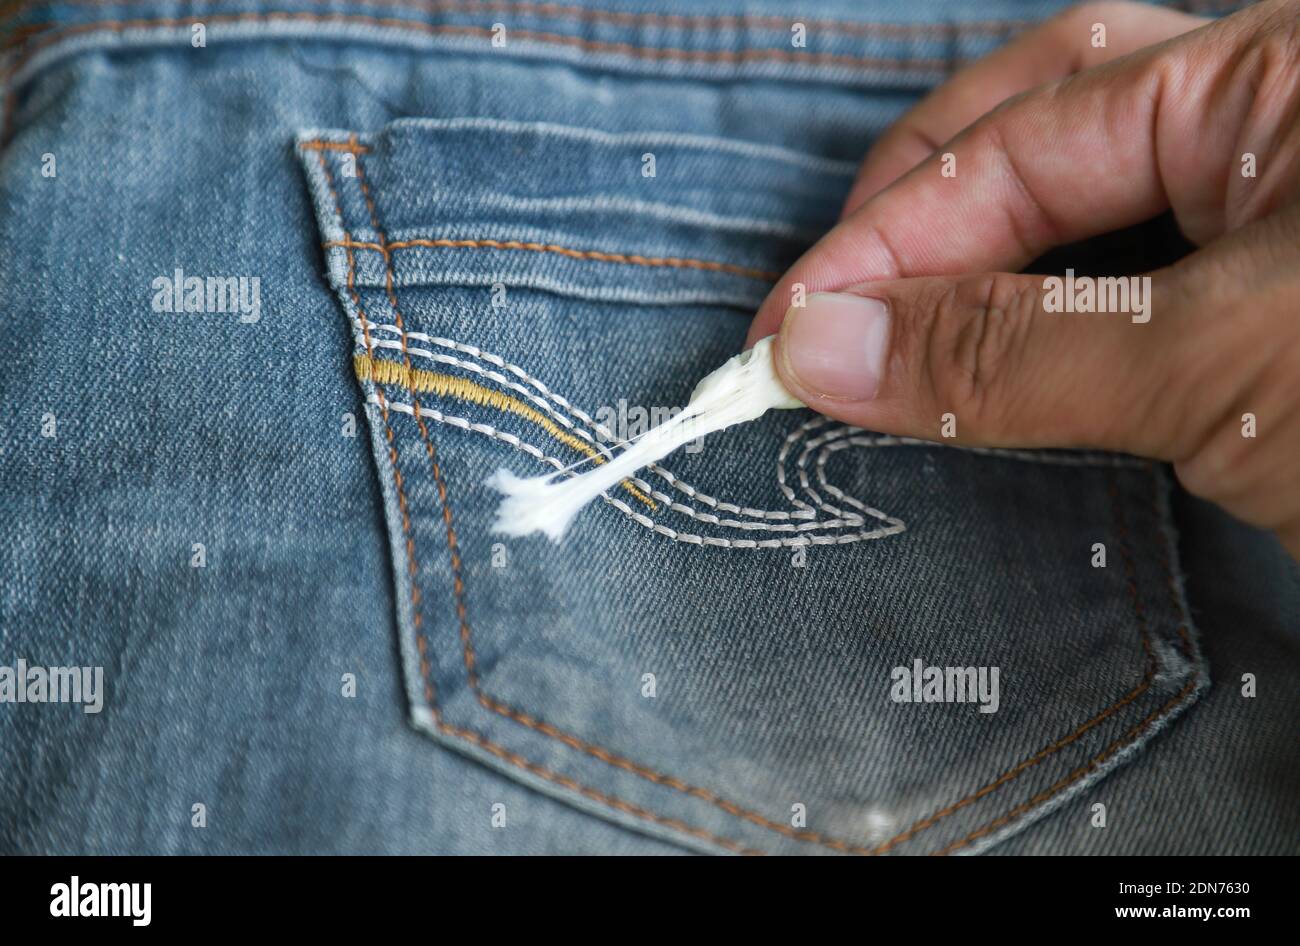 Verkürzte Hand Entfernen Kaugummi Auf Jeans Stecken Stockfotografie - Alamy